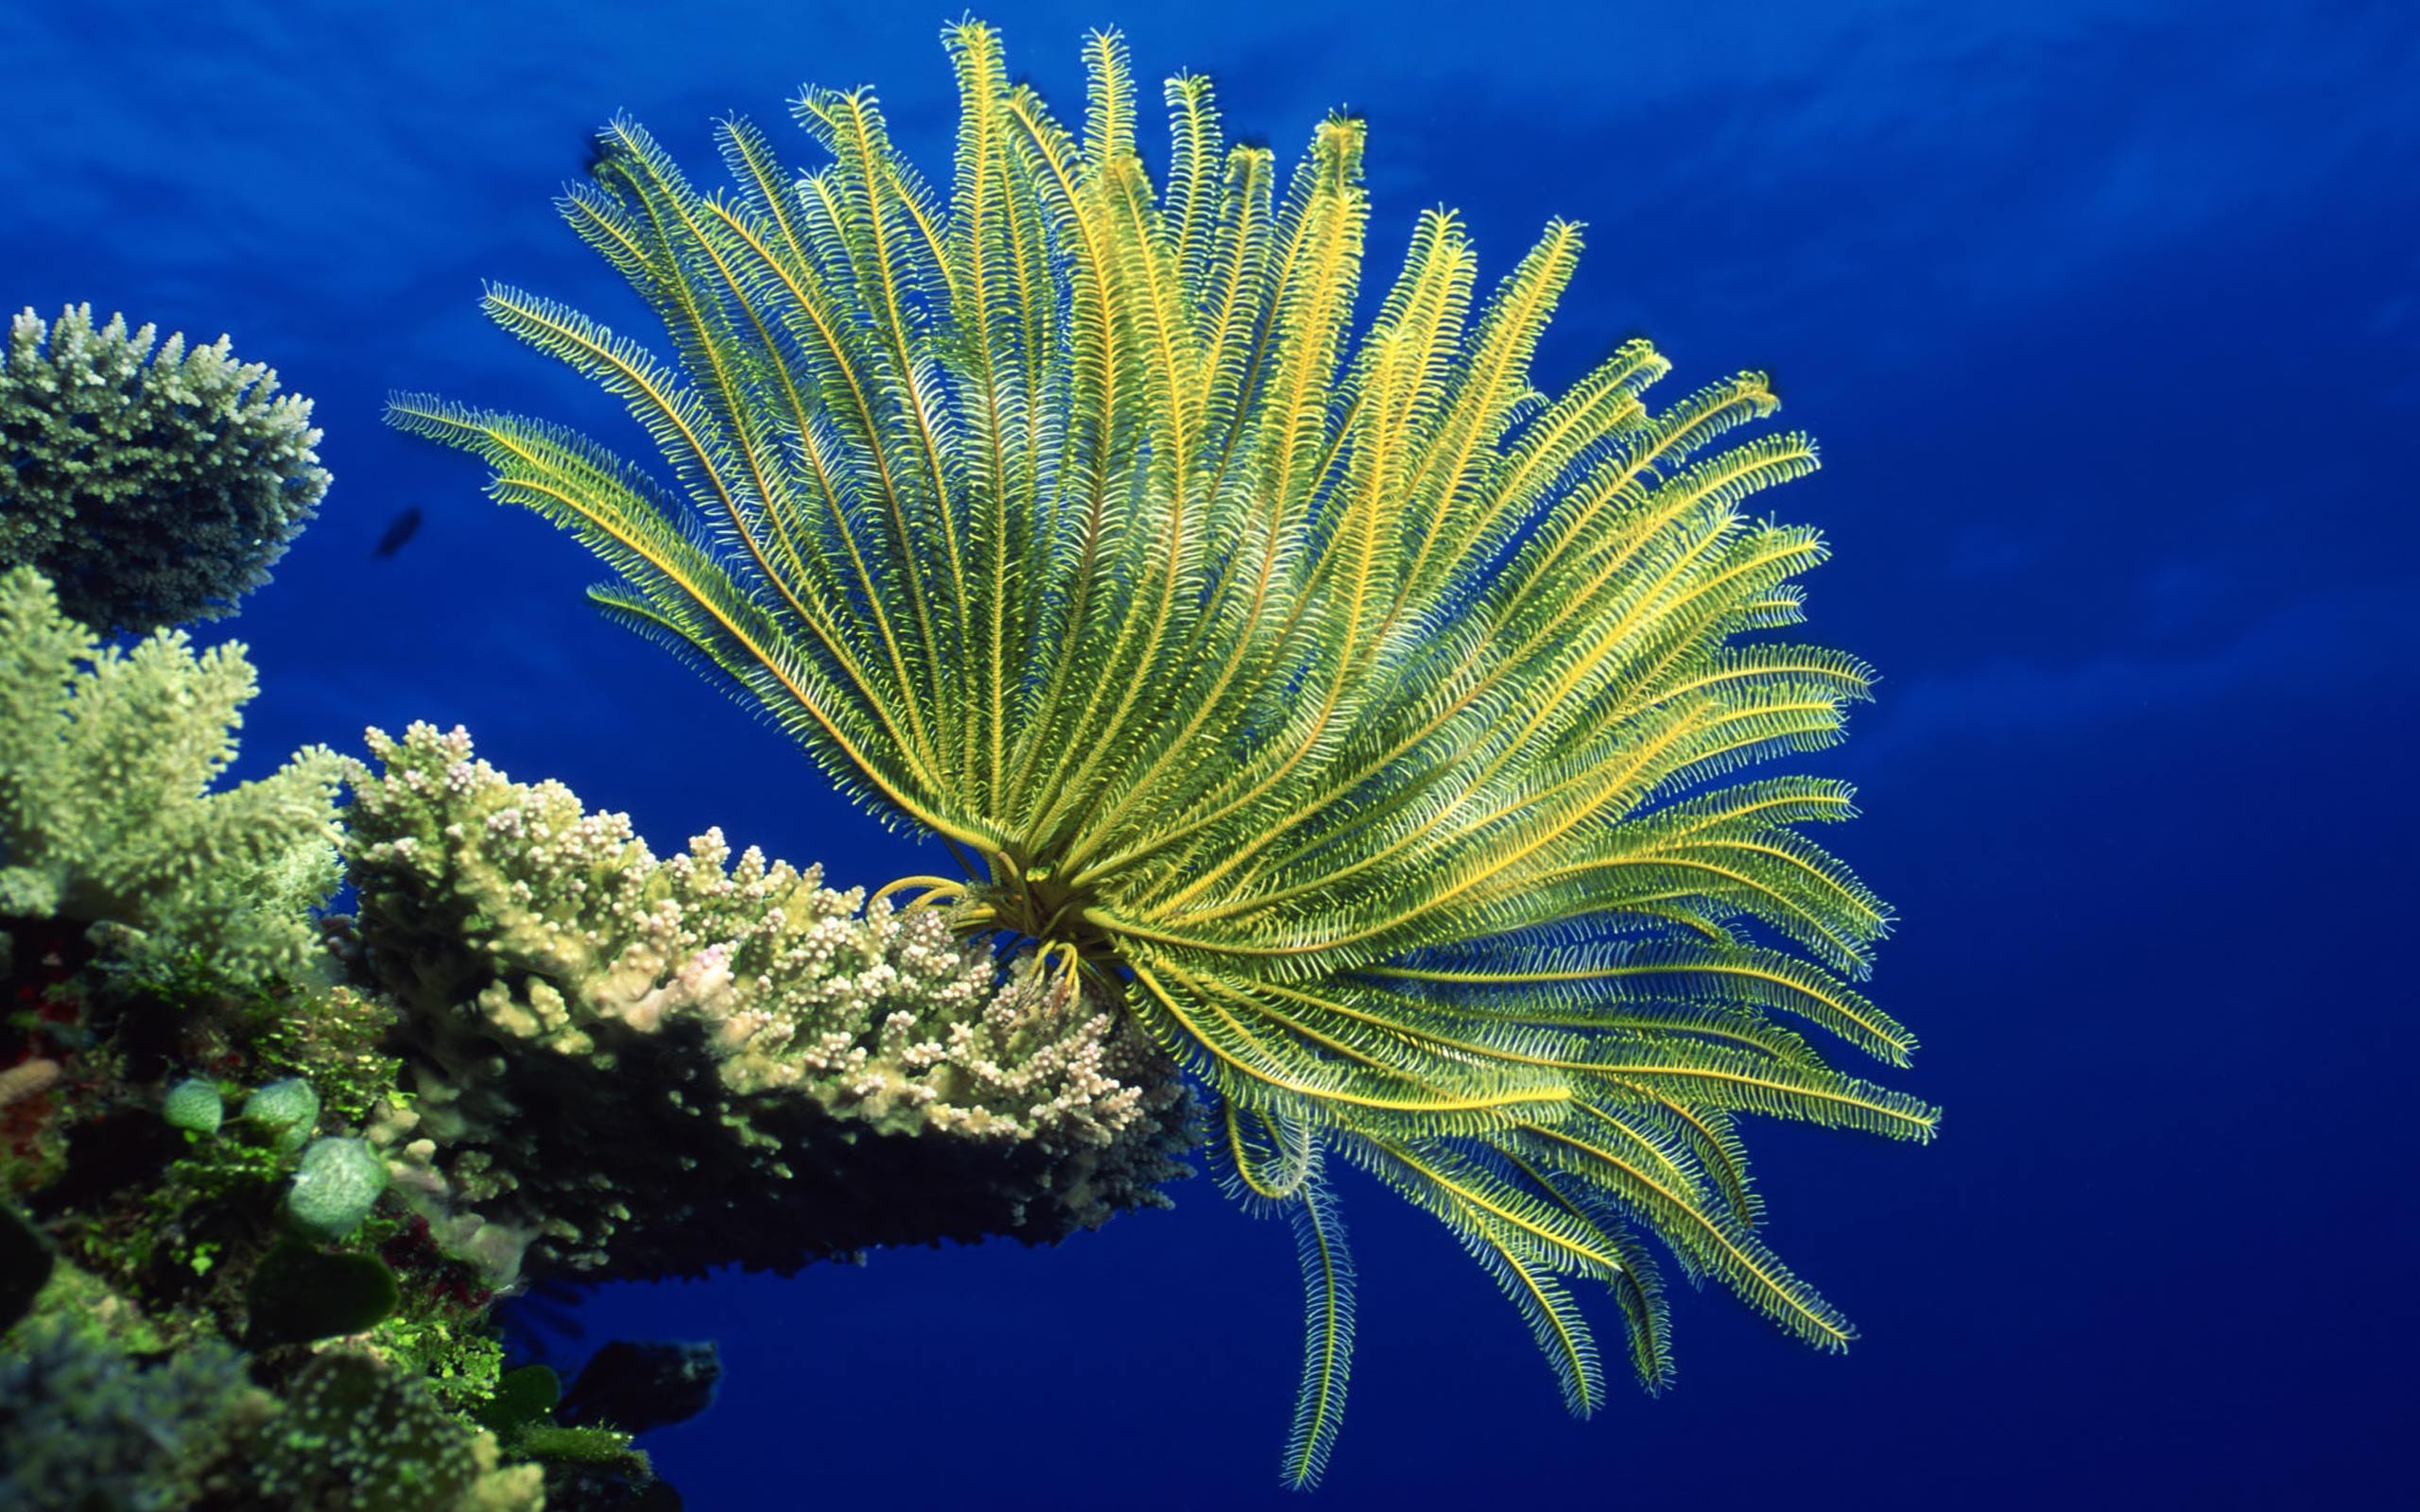 Desktop Wallpaper Gallery Animals Sea anemones - Coral reef